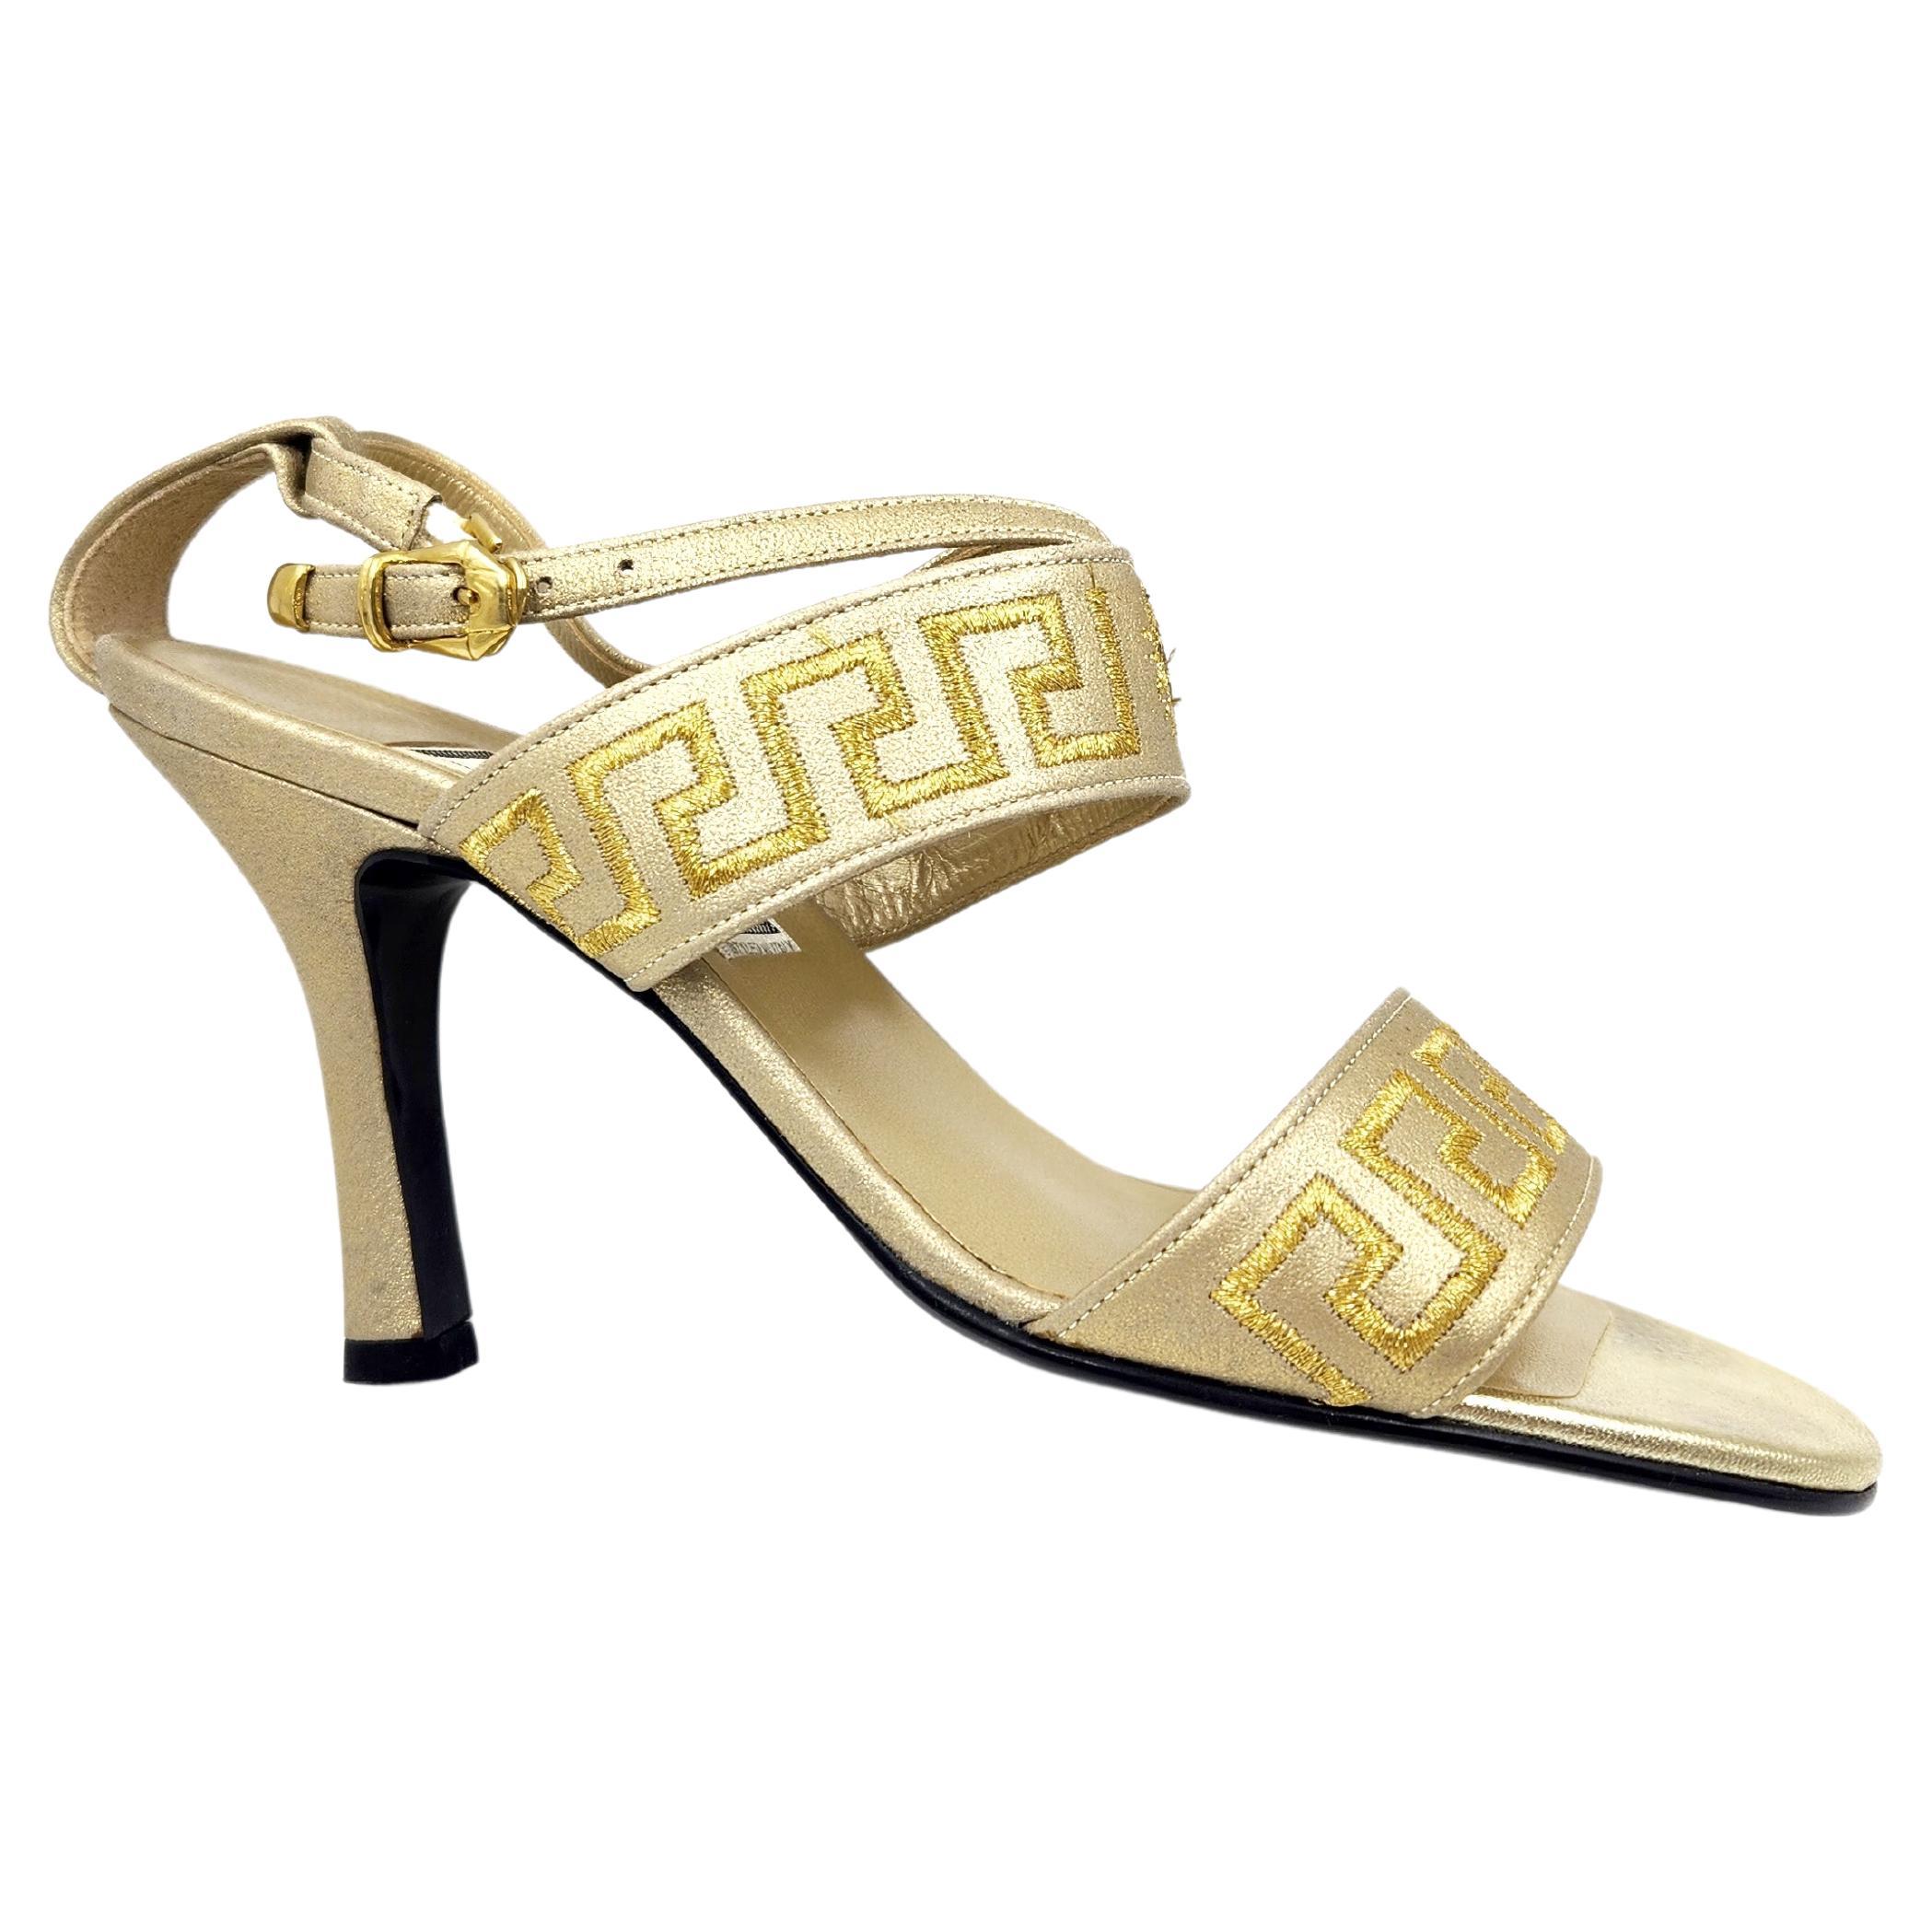 Chaussures à talons gréca dorées Gianni Versace vintage pour femme, années 1990, taille 36